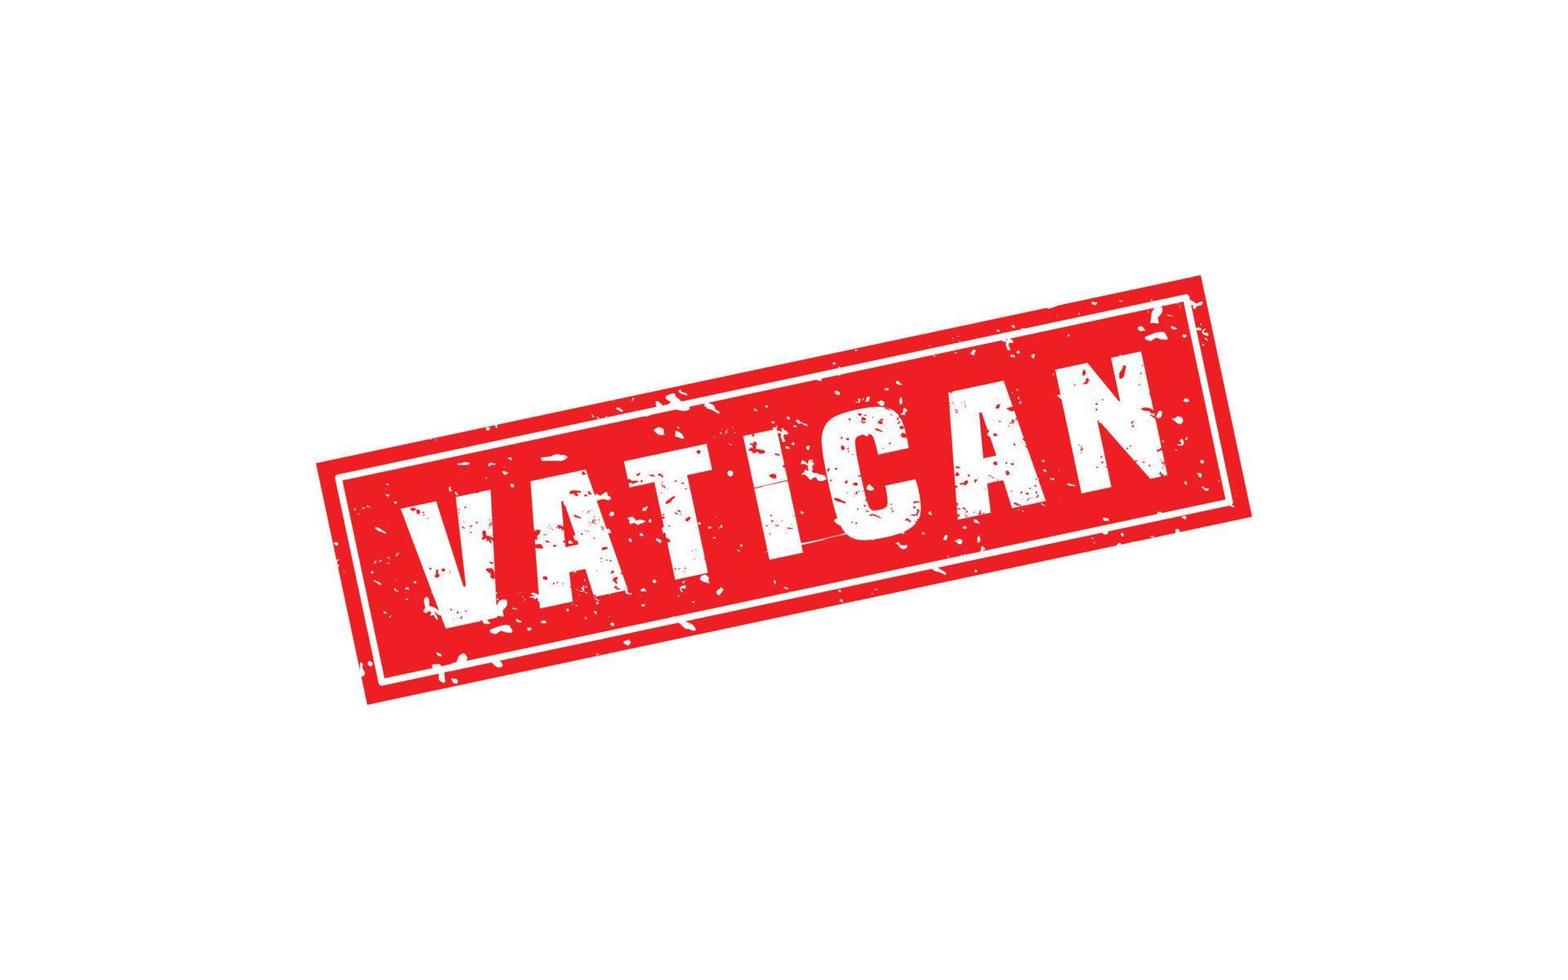 timbre en caoutchouc vatican avec style grunge sur fond blanc vecteur